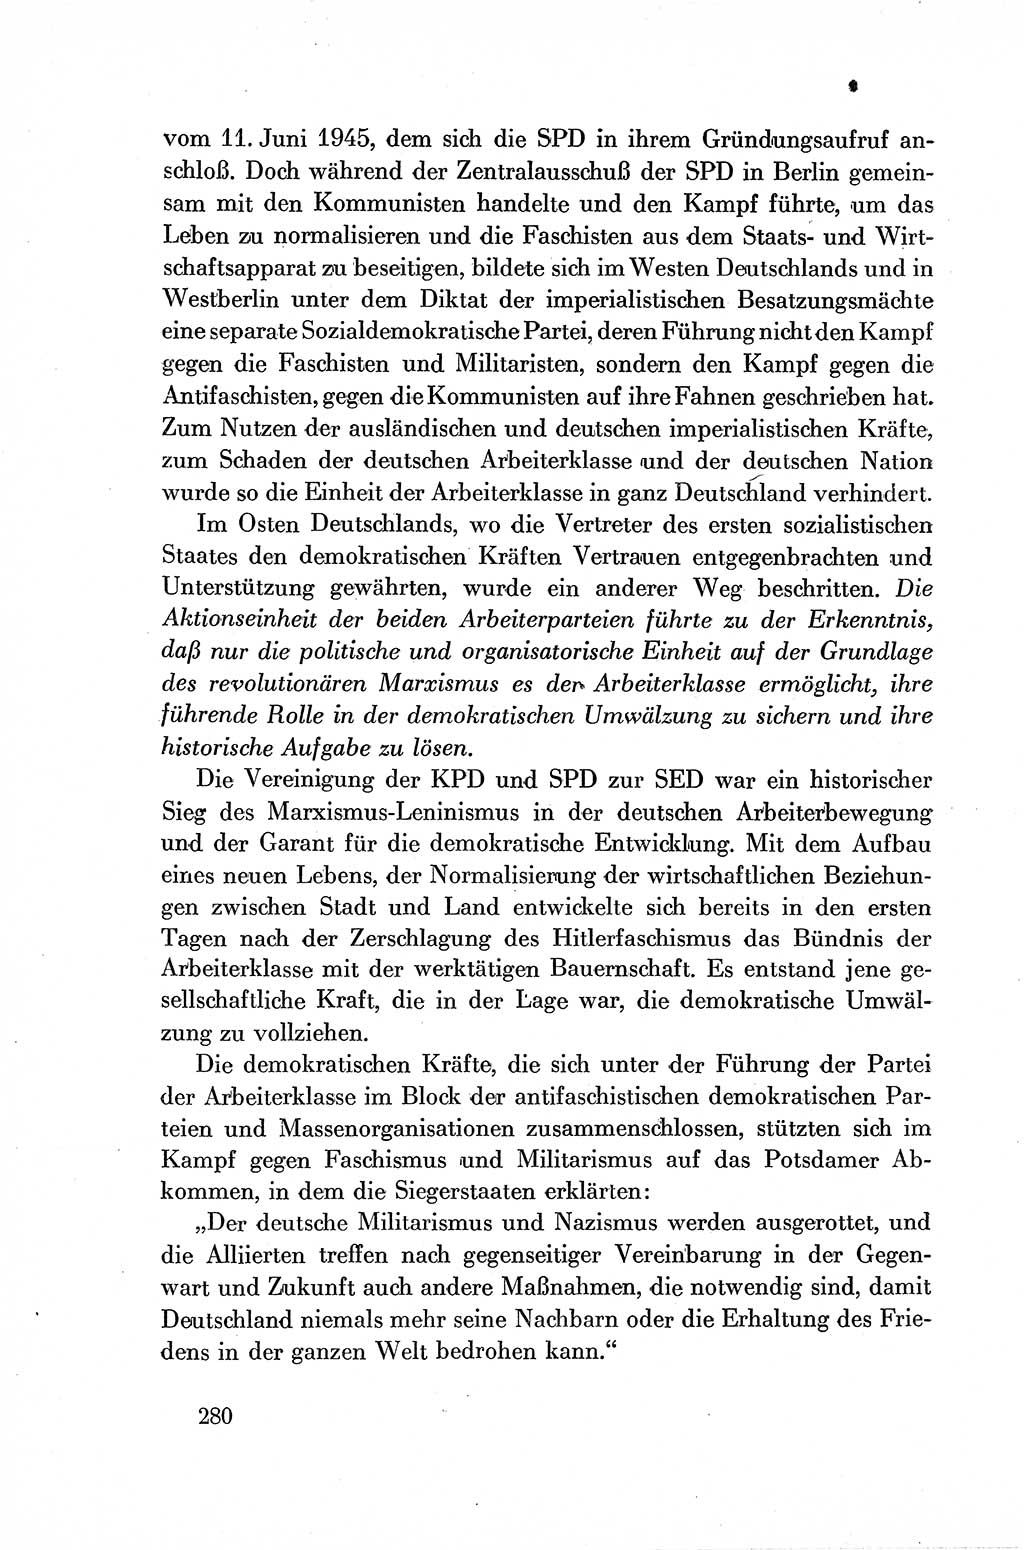 Dokumente der Sozialistischen Einheitspartei Deutschlands (SED) [Deutsche Demokratische Republik (DDR)] 1954-1955, Seite 280 (Dok. SED DDR 1954-1955, S. 280)